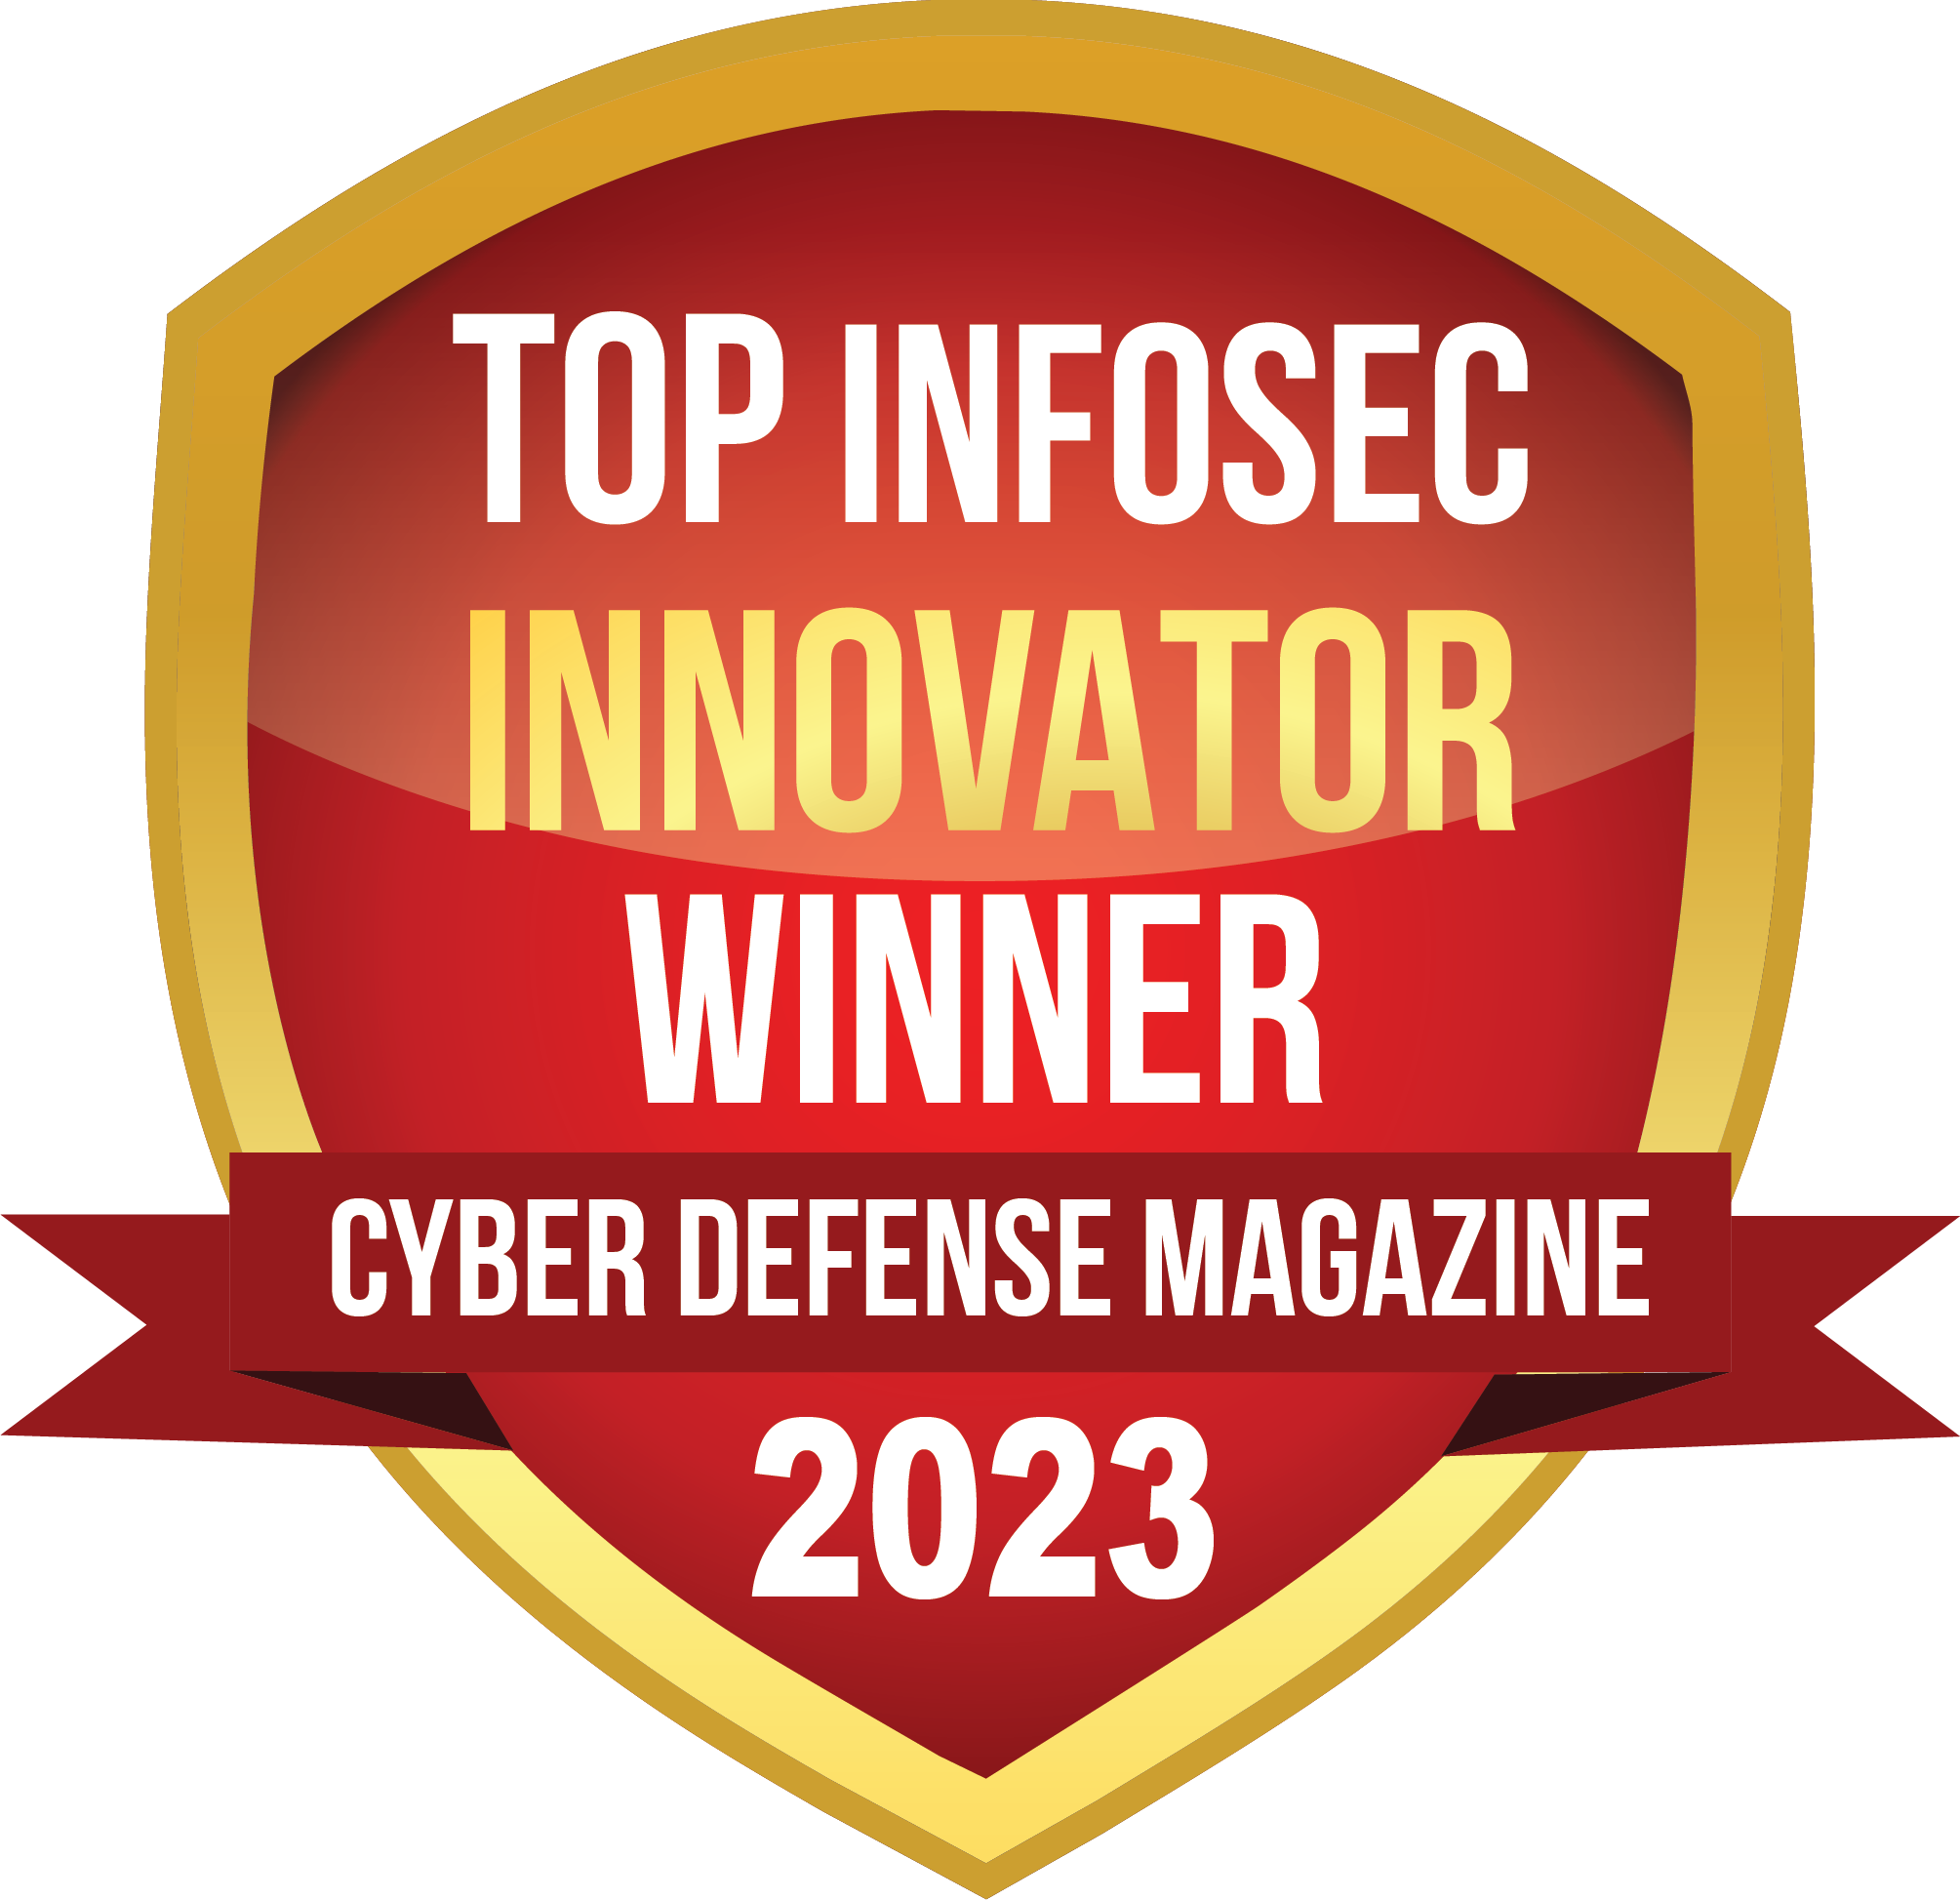 Top InfoSec Innovator Winner 2023 Award